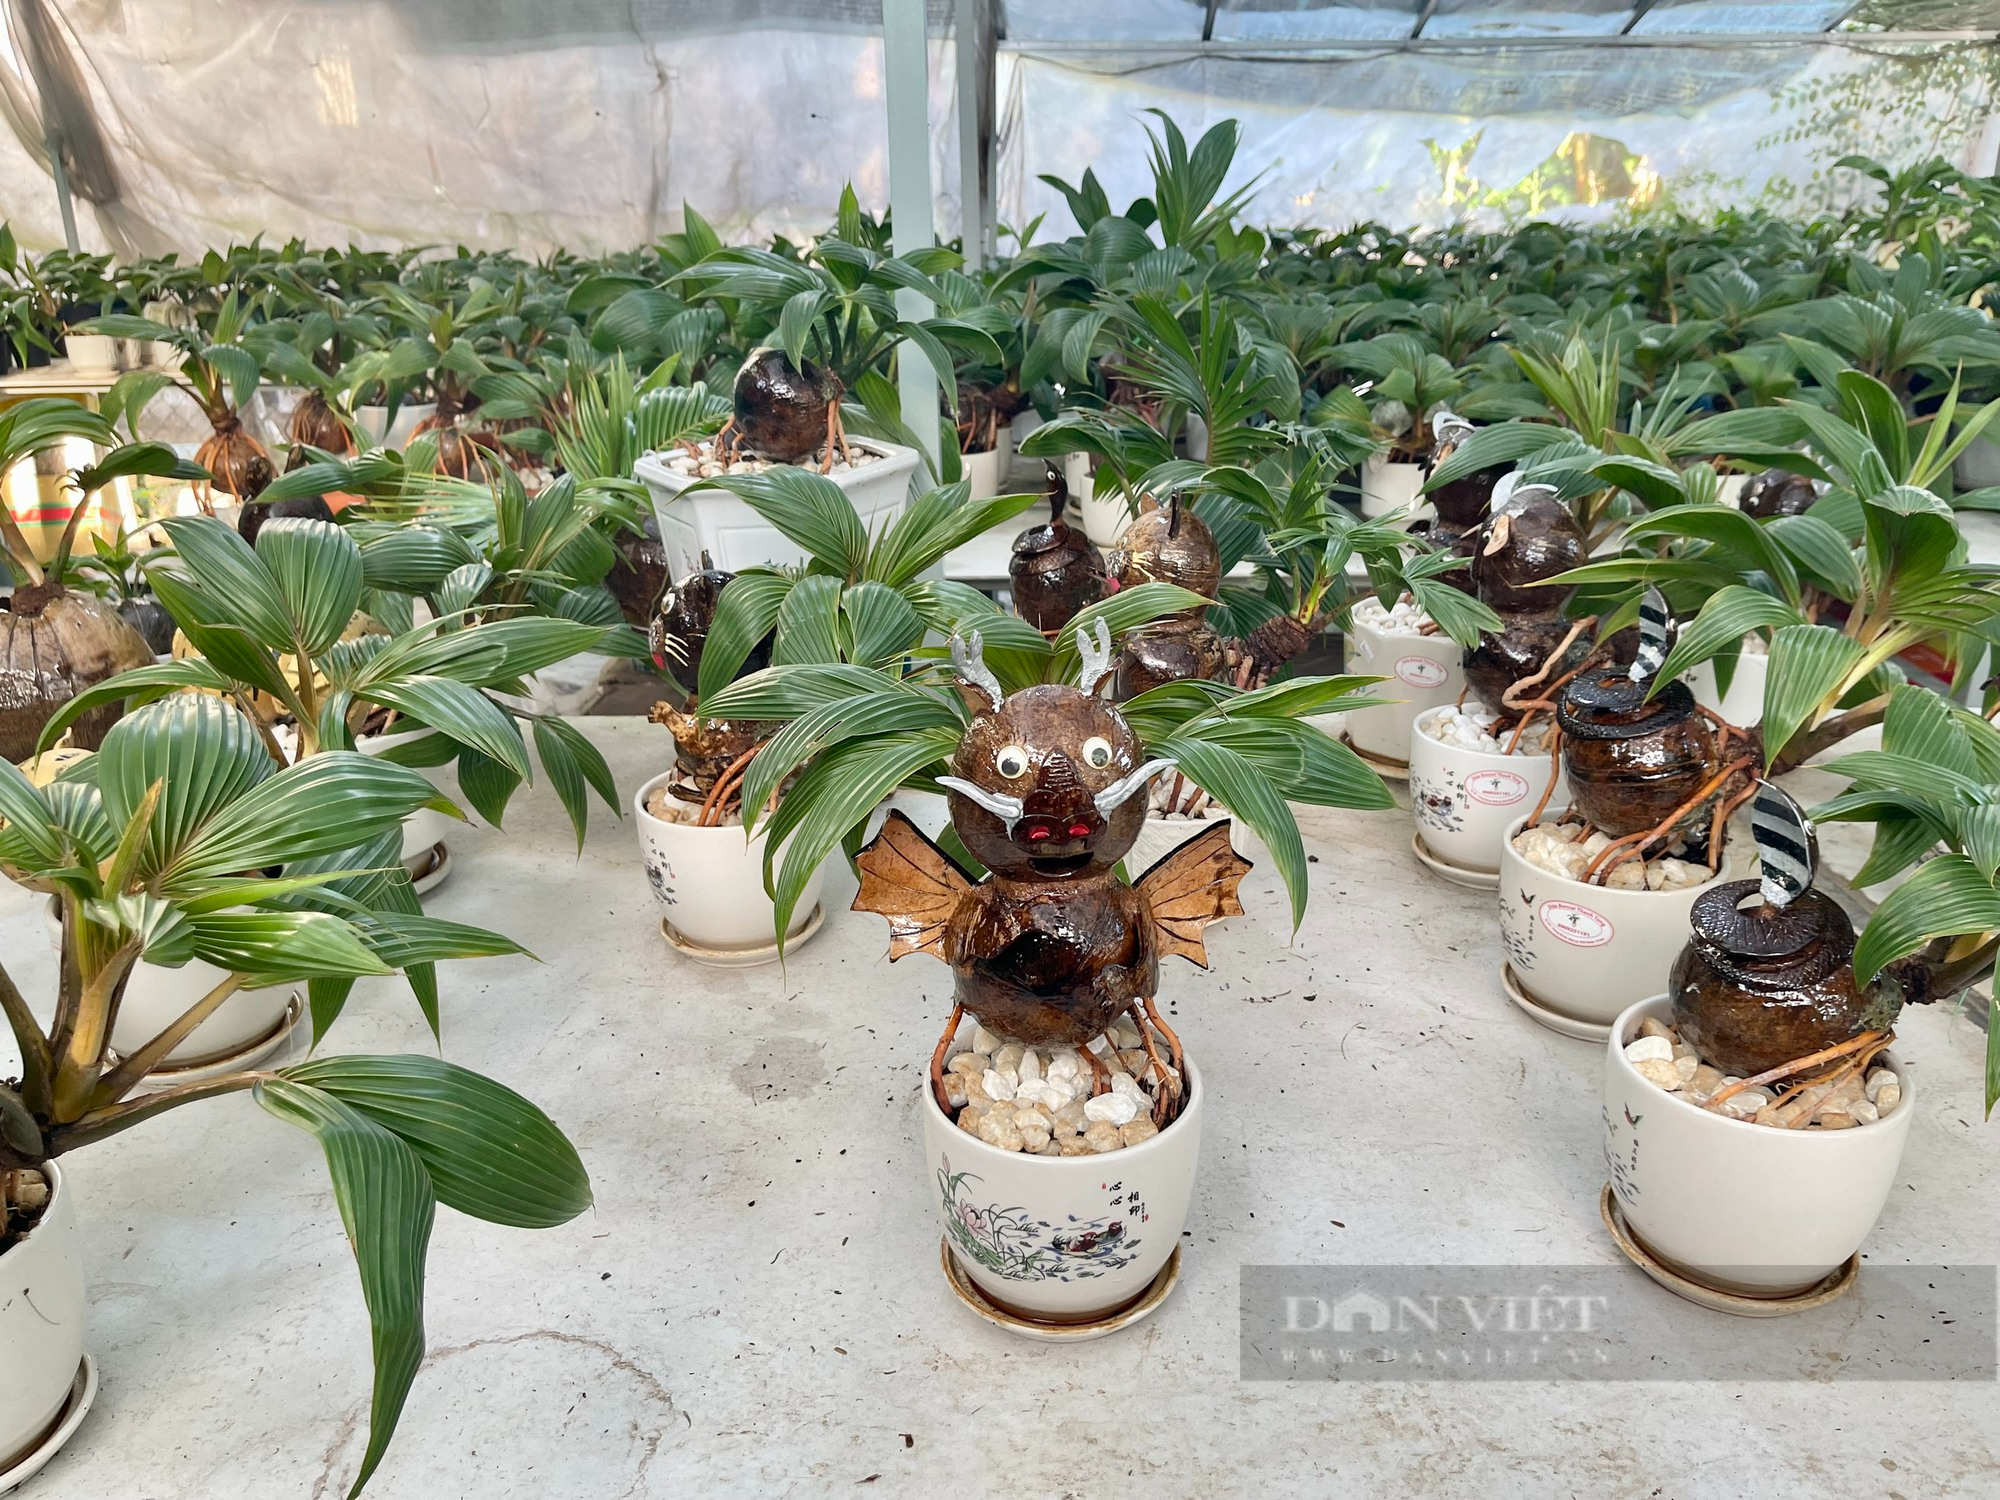 Từ quả dừa khô bỏ đi, nông dân Sài Gòn làm giàu nhờ tạo bonsai độc lạ - Ảnh 1.